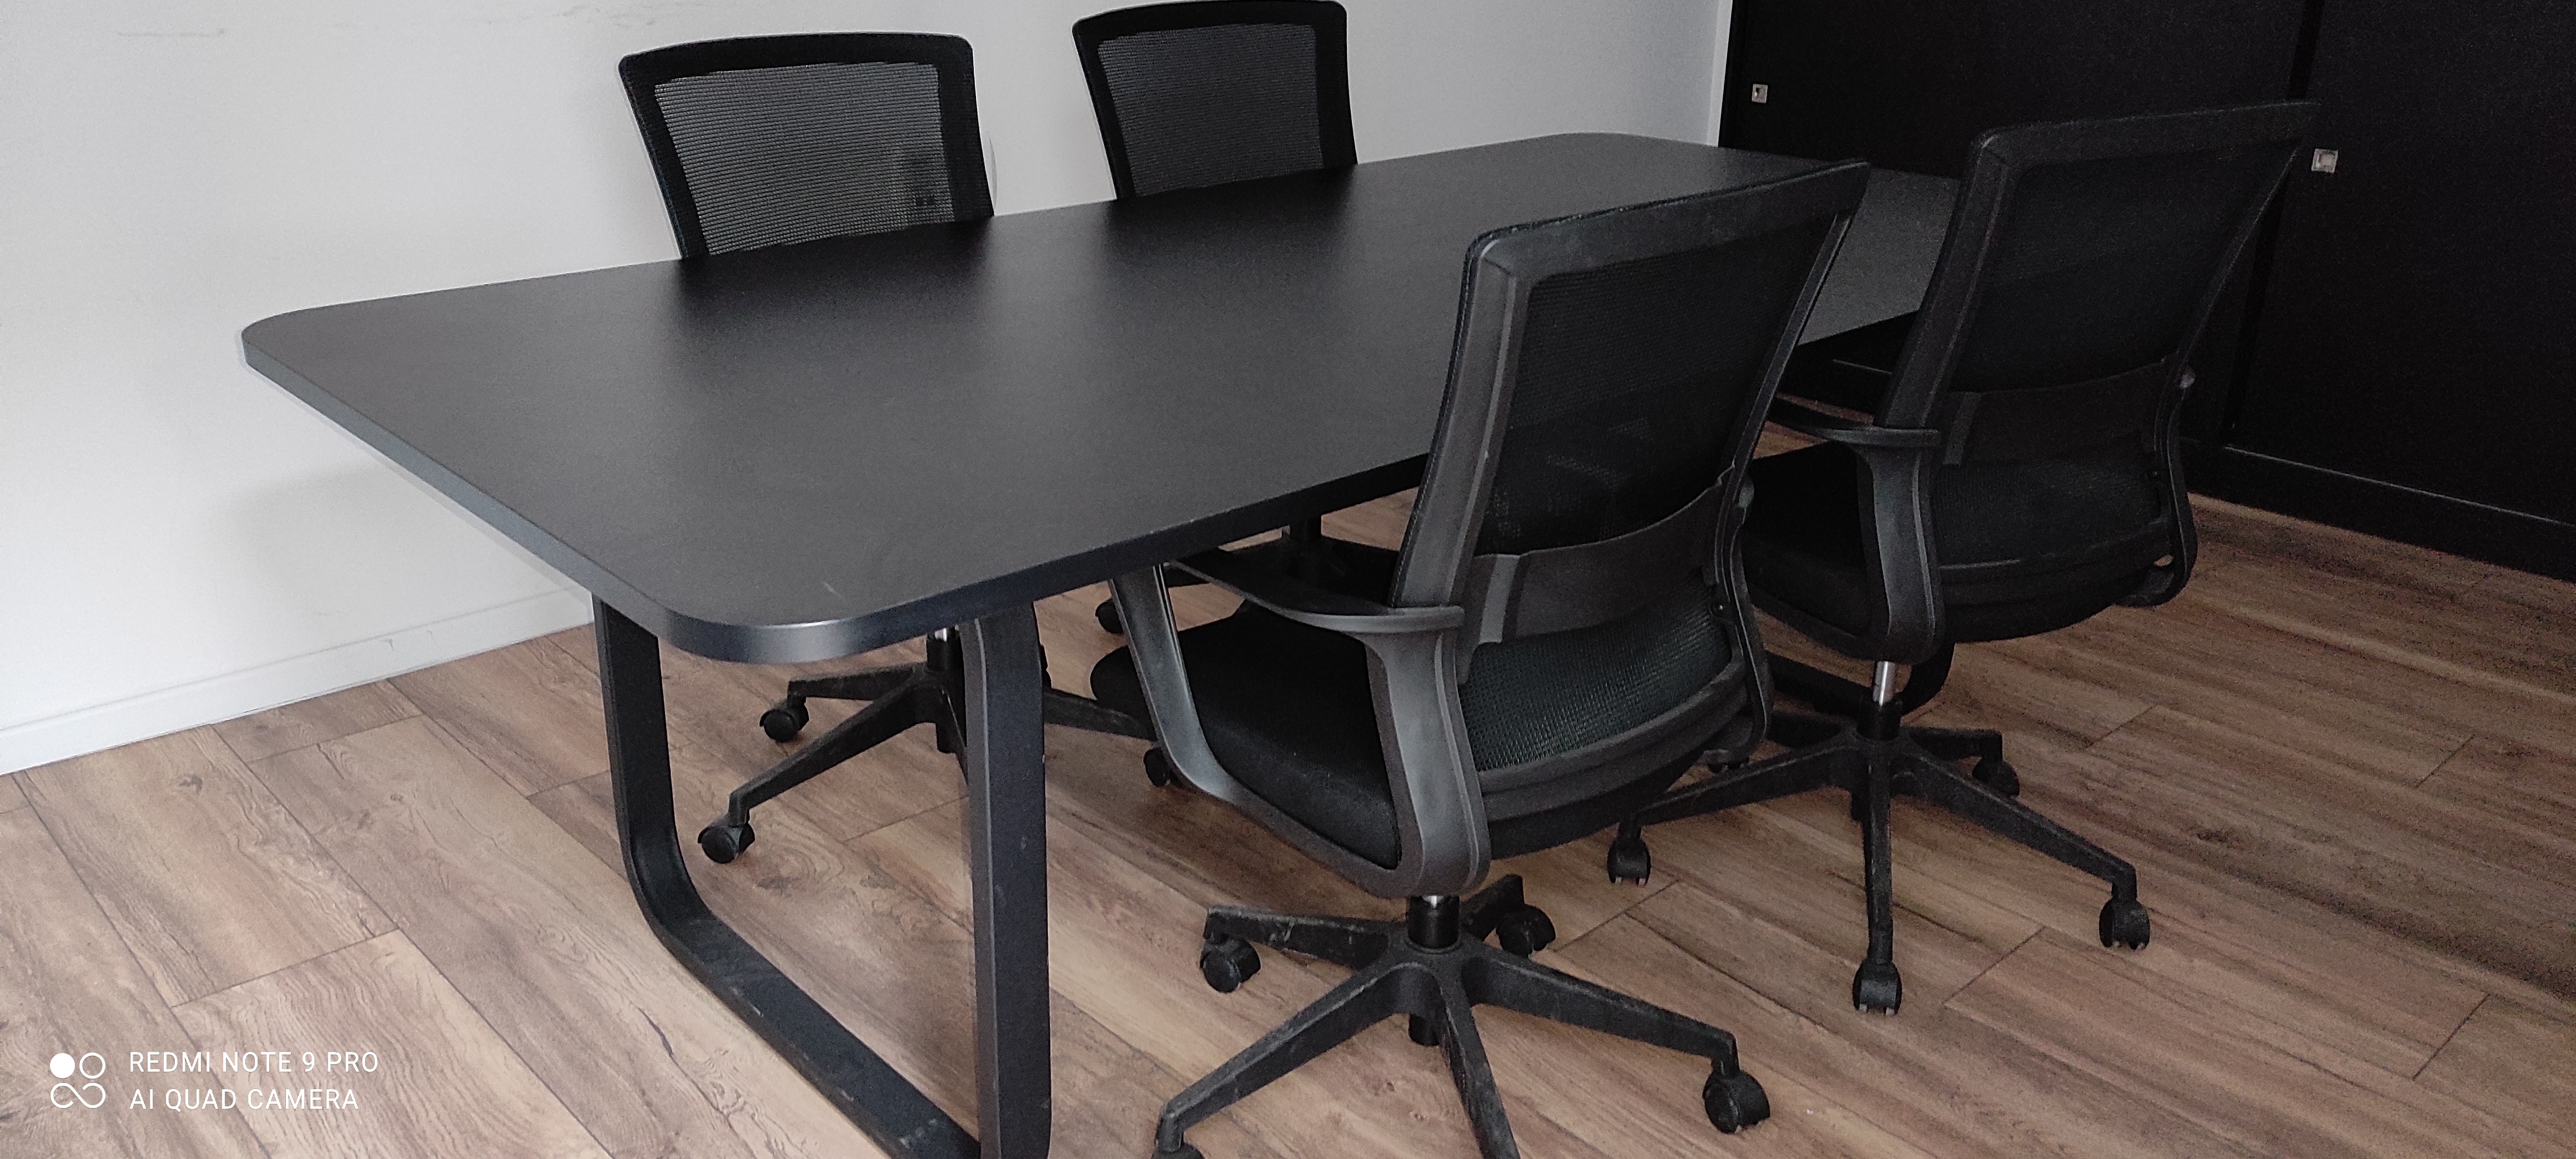 תמונה 2 ,שולחן ישיבות + שולחן מנהל למכירה בראשון לציון ציוד משרדי  ריהוט משרדי